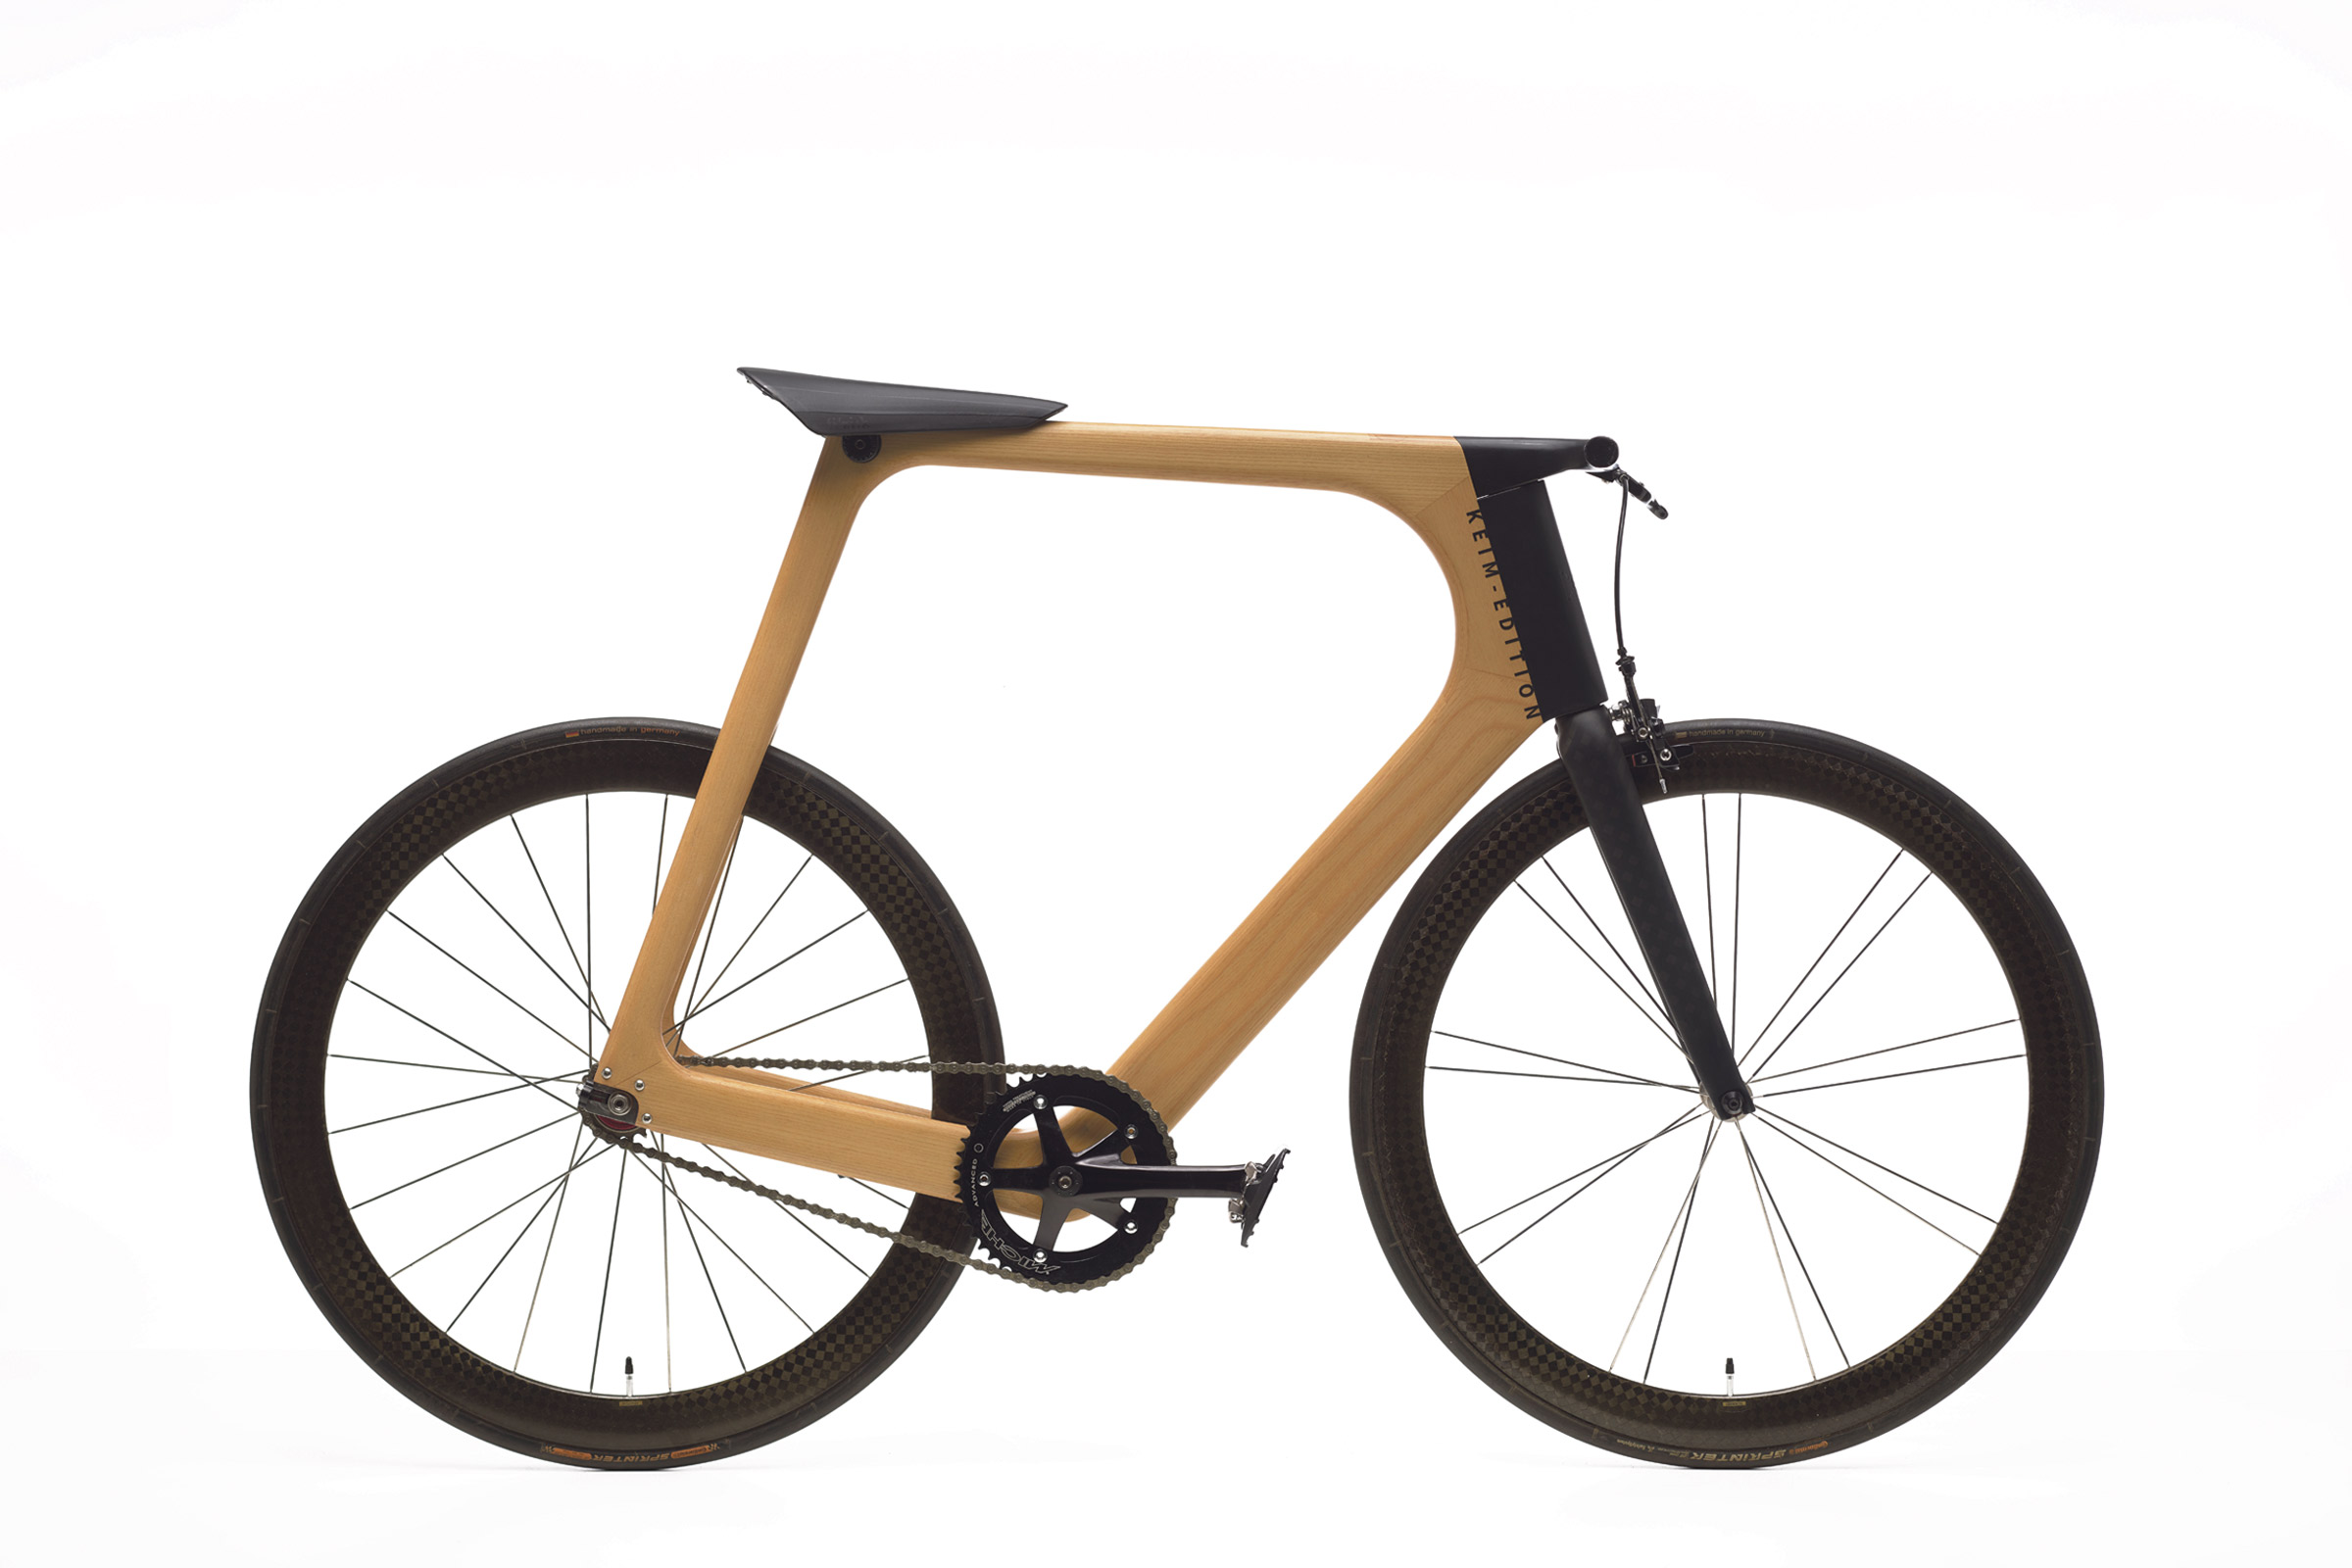 Kultobjekt Designobjekt Fahrrad